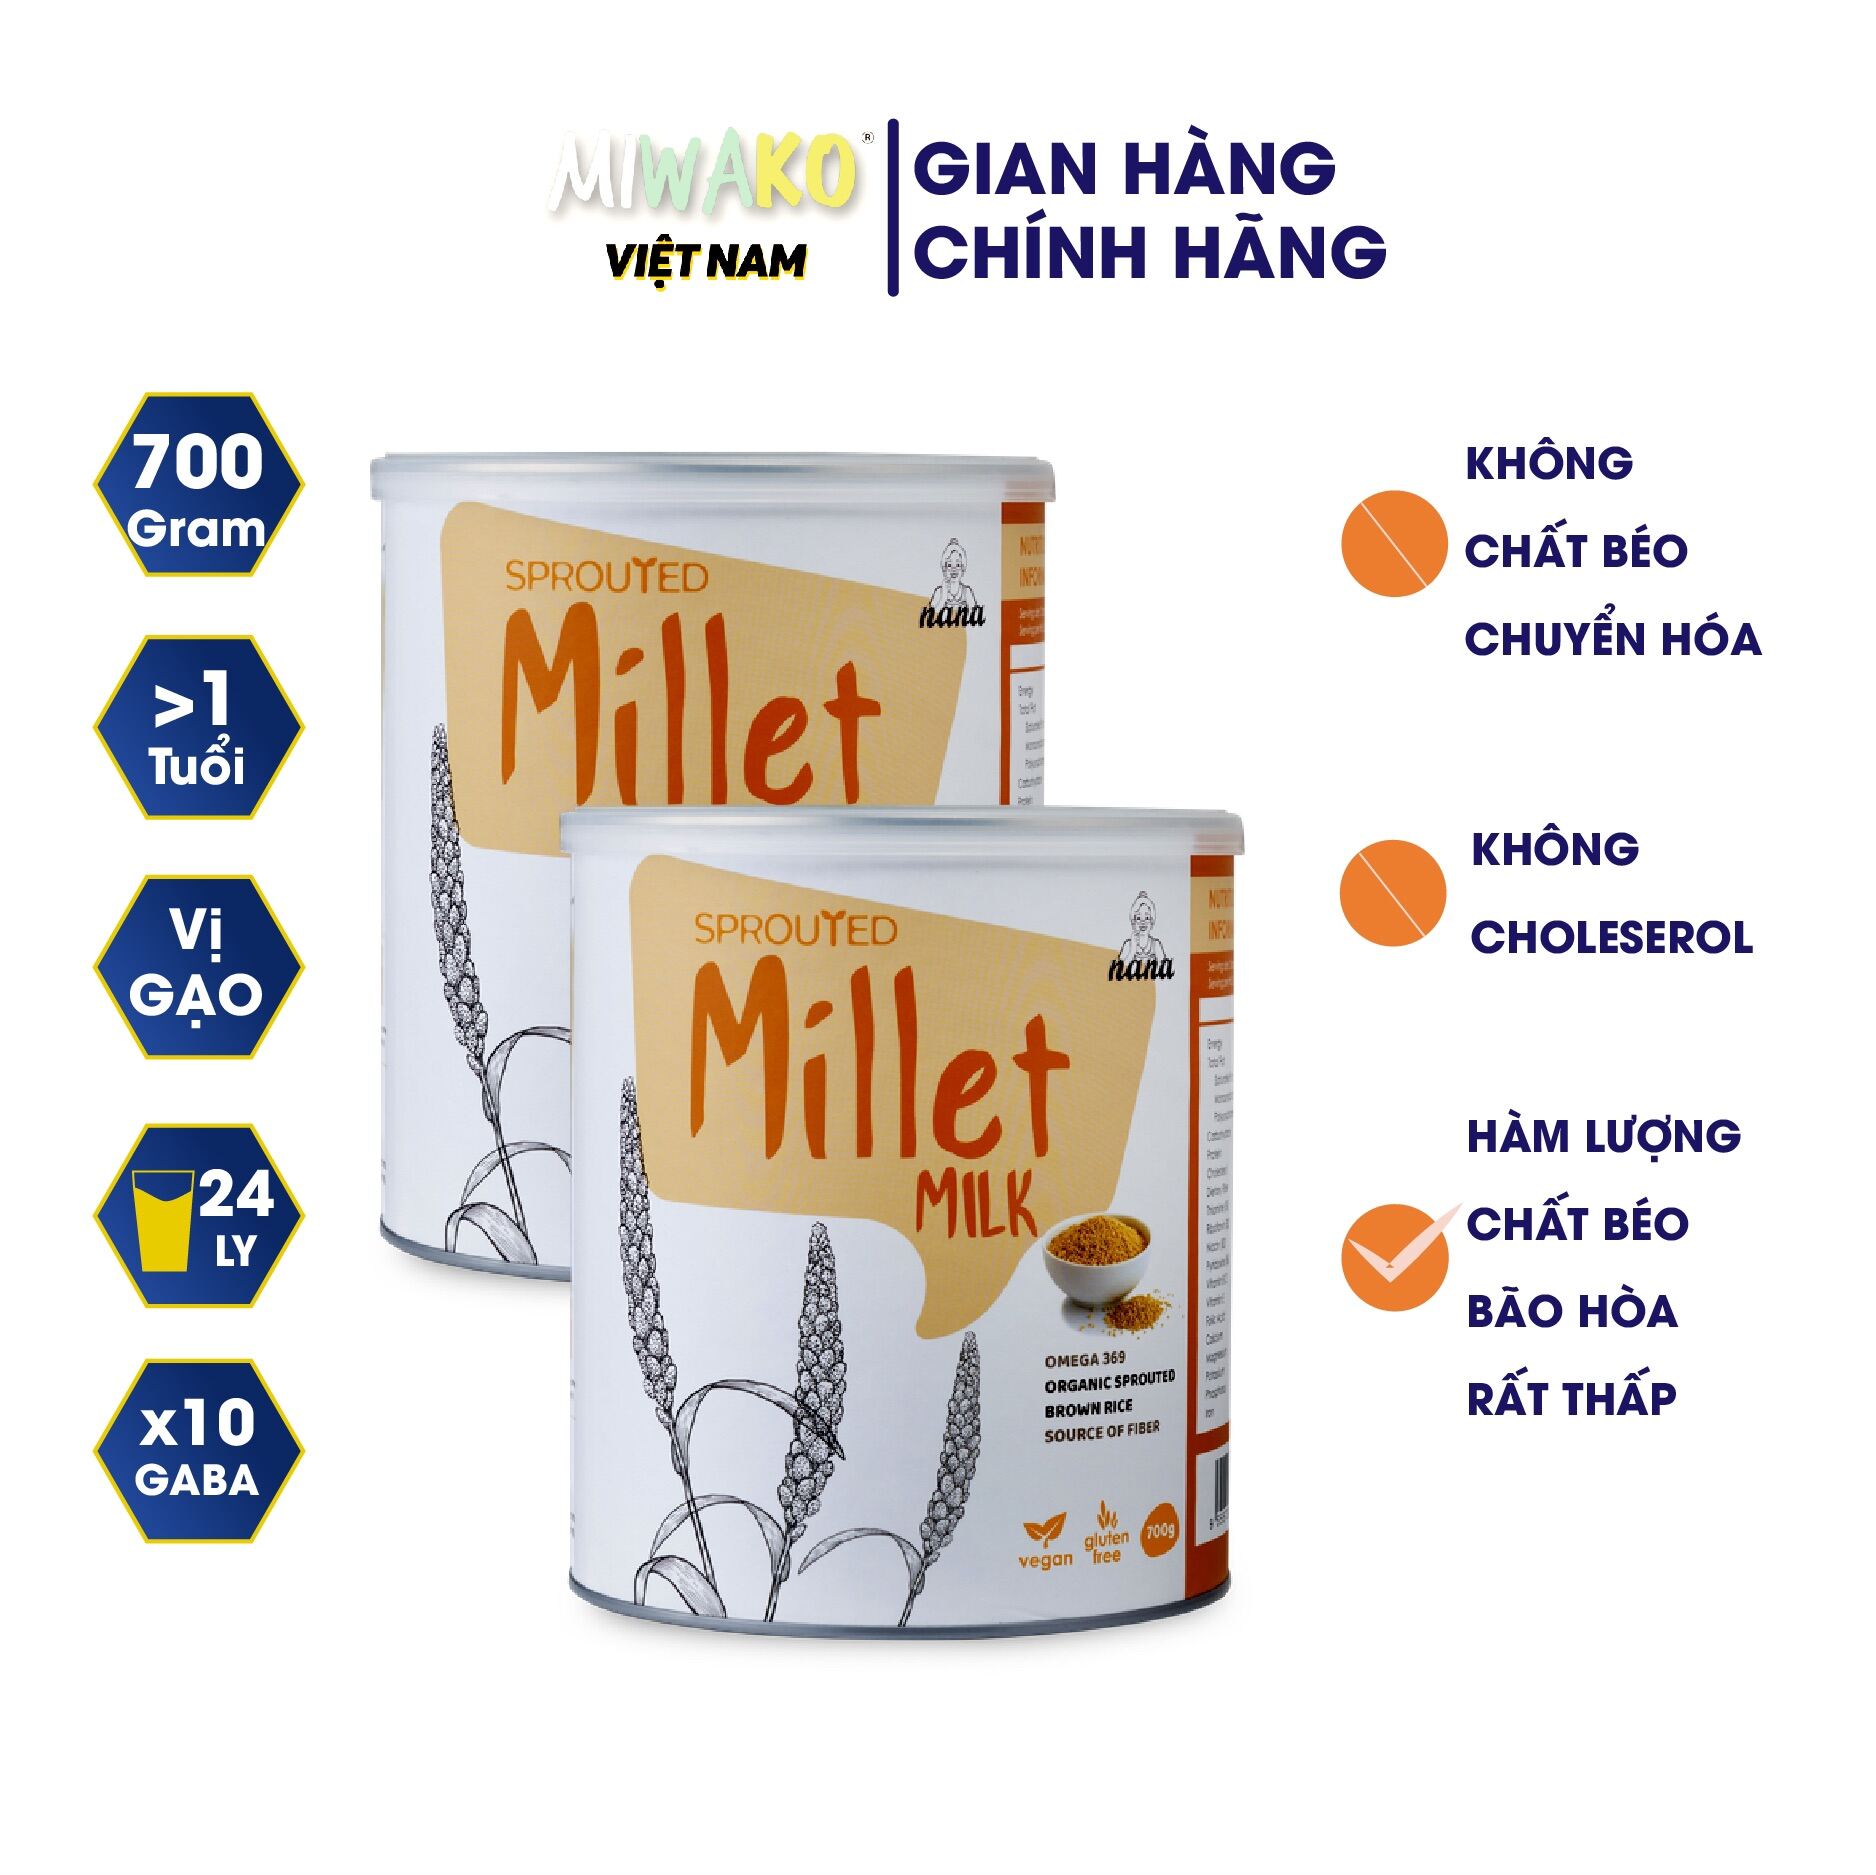 Sữa hạt hữu cơ 700g millet 100% organic nhập khẩu chính hãng từ malaysia - ảnh sản phẩm 7